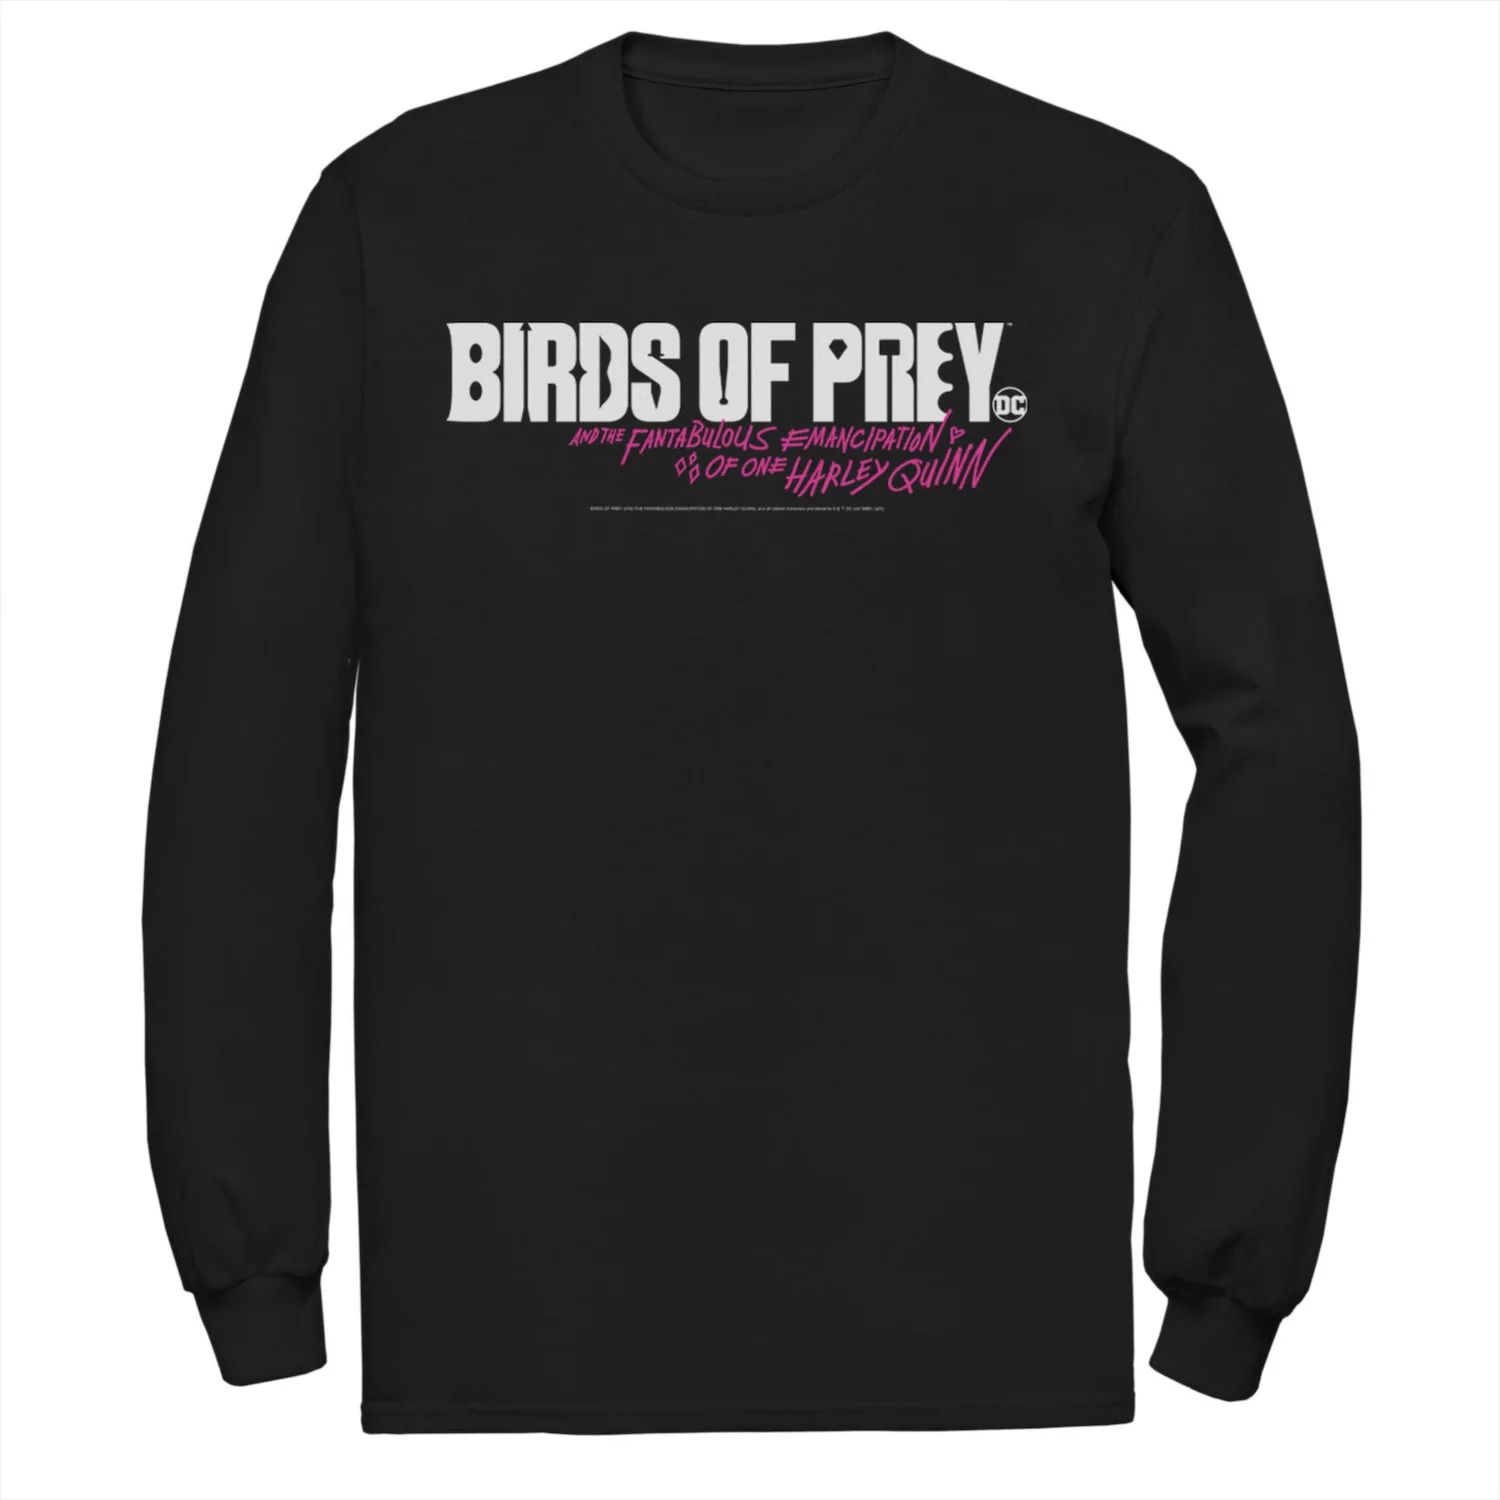 Мужская футболка с простым текстовым логотипом «Хищные птицы» DC Comics приор групп наклейка патч для одежды dc хищные птицы – 2